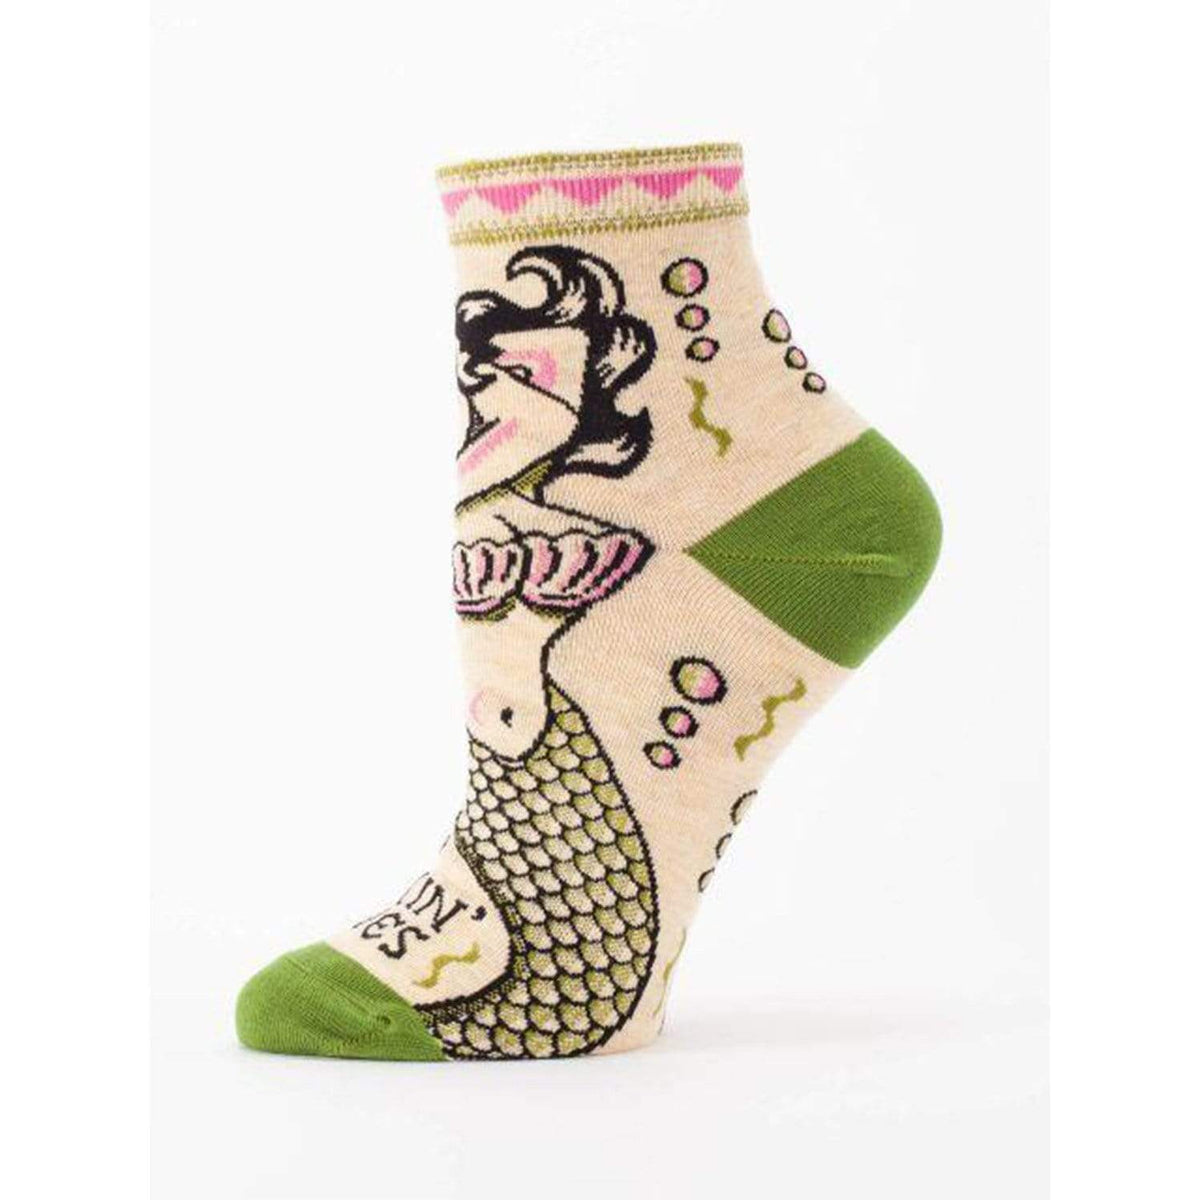 Makin&#39; Waves Socks - Women&#39;s Ankle Sock tan